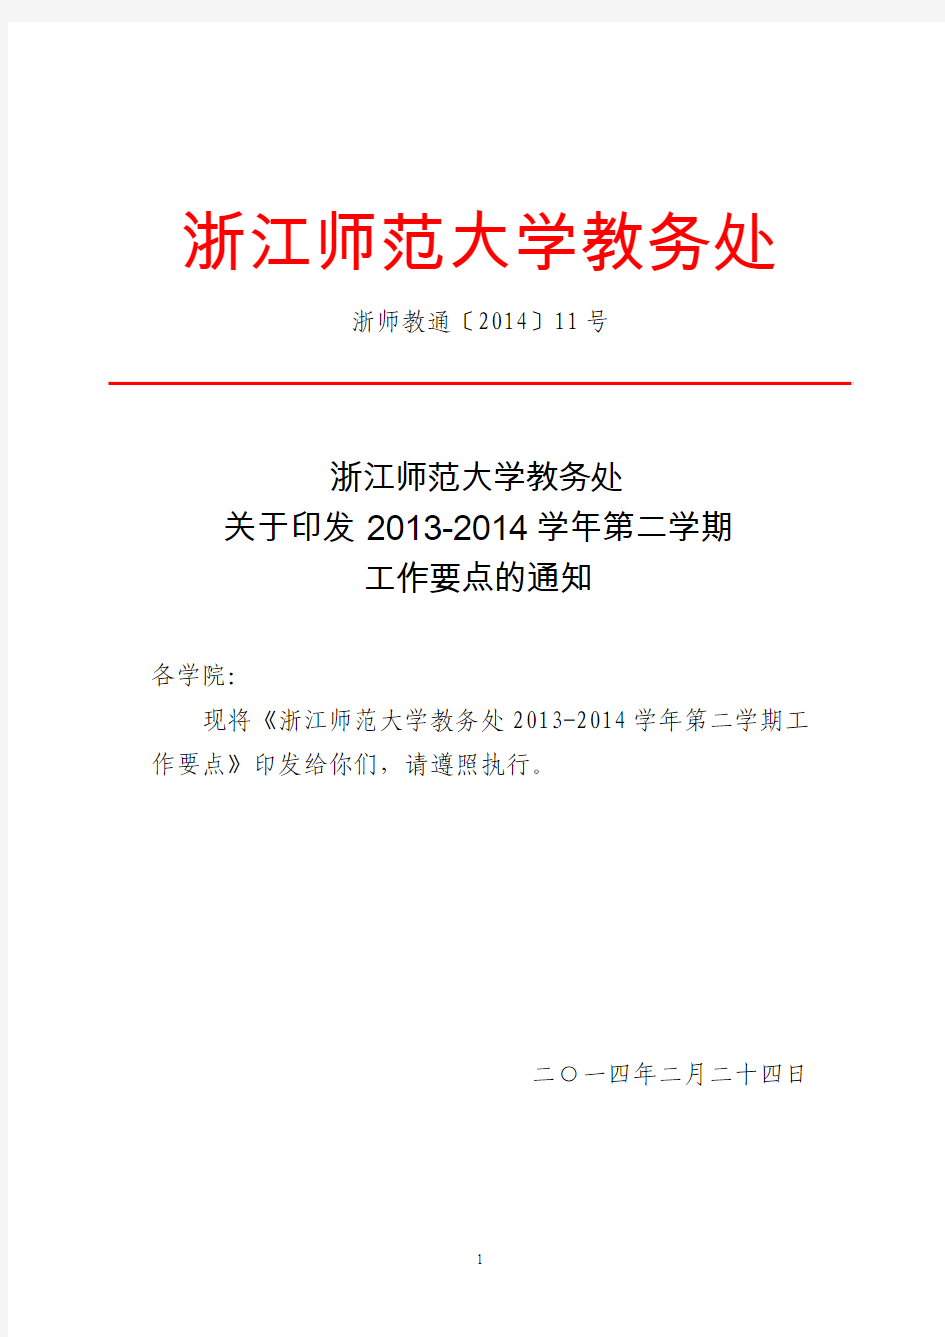 浙江师范大学教务处关于印发2013-2014学年第二学期工作要点的通知